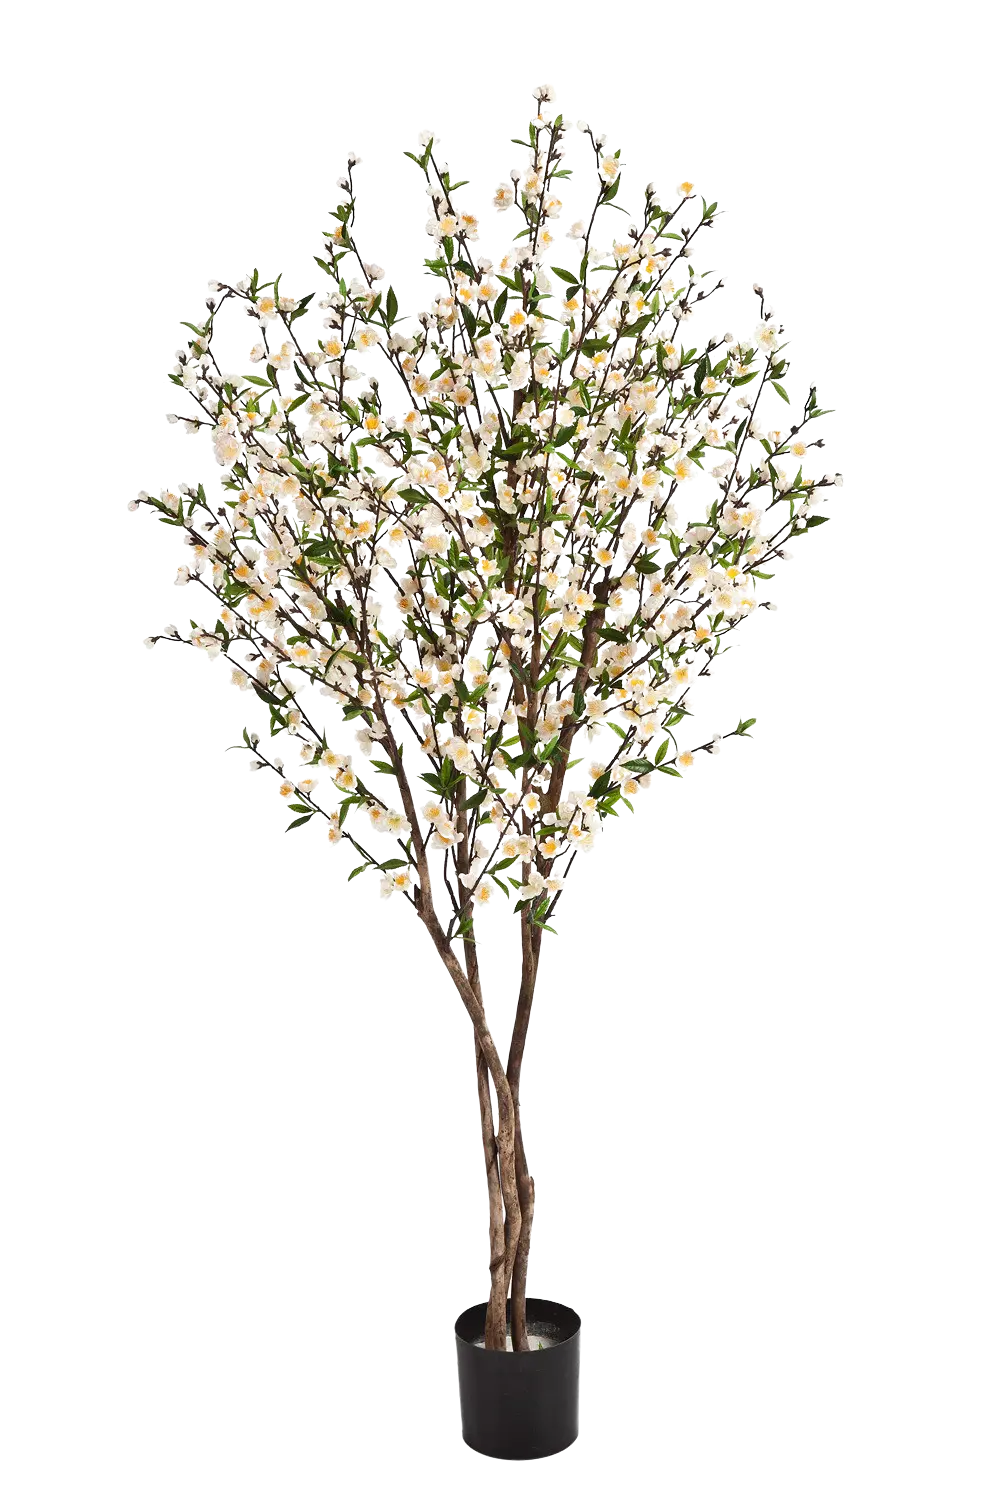 Künstlicher Kirschbaum - Willi auf transparentem Hintergrund mit echt wirkenden Kunstblättern. Diese Kunstpflanze gehört zur Gattung/Familie der "Kirschbäume" bzw. "Kunst-Kirschbäume".